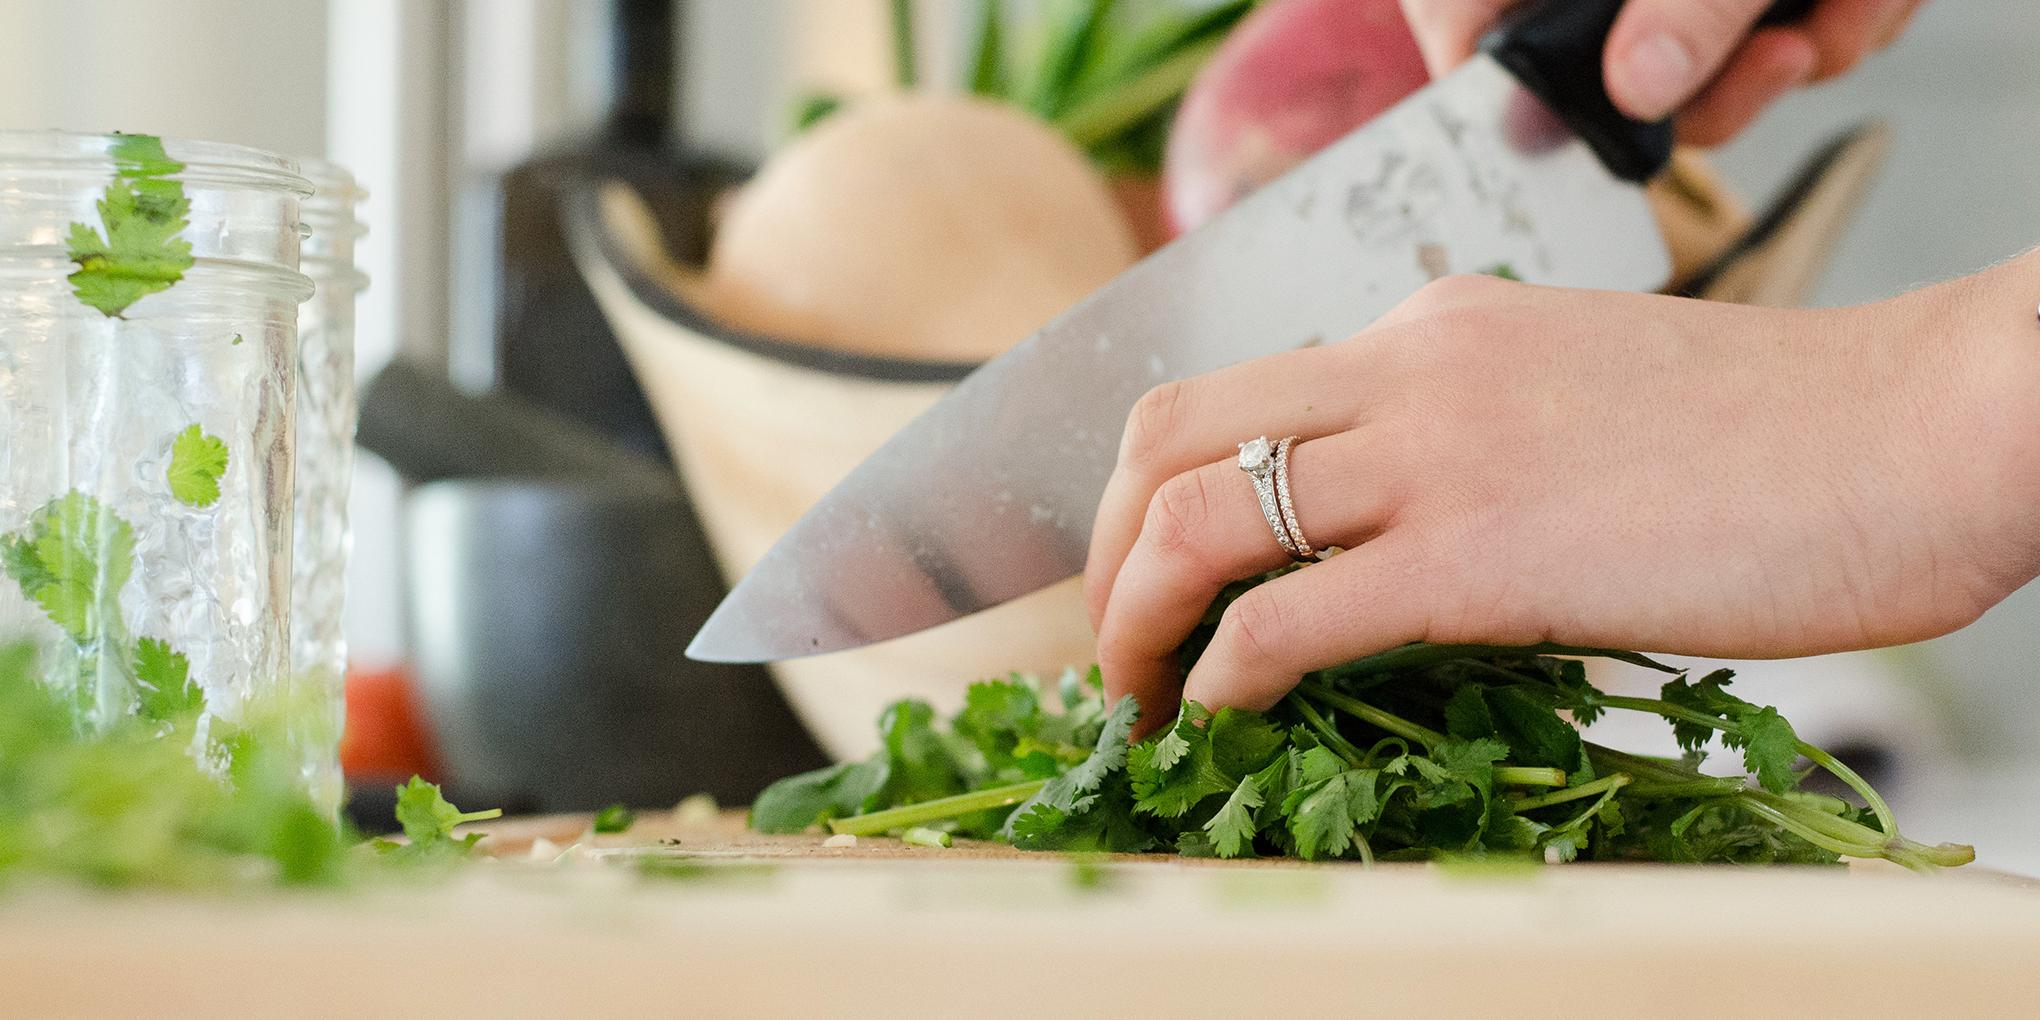 Werkblad met handen die groenten snijden